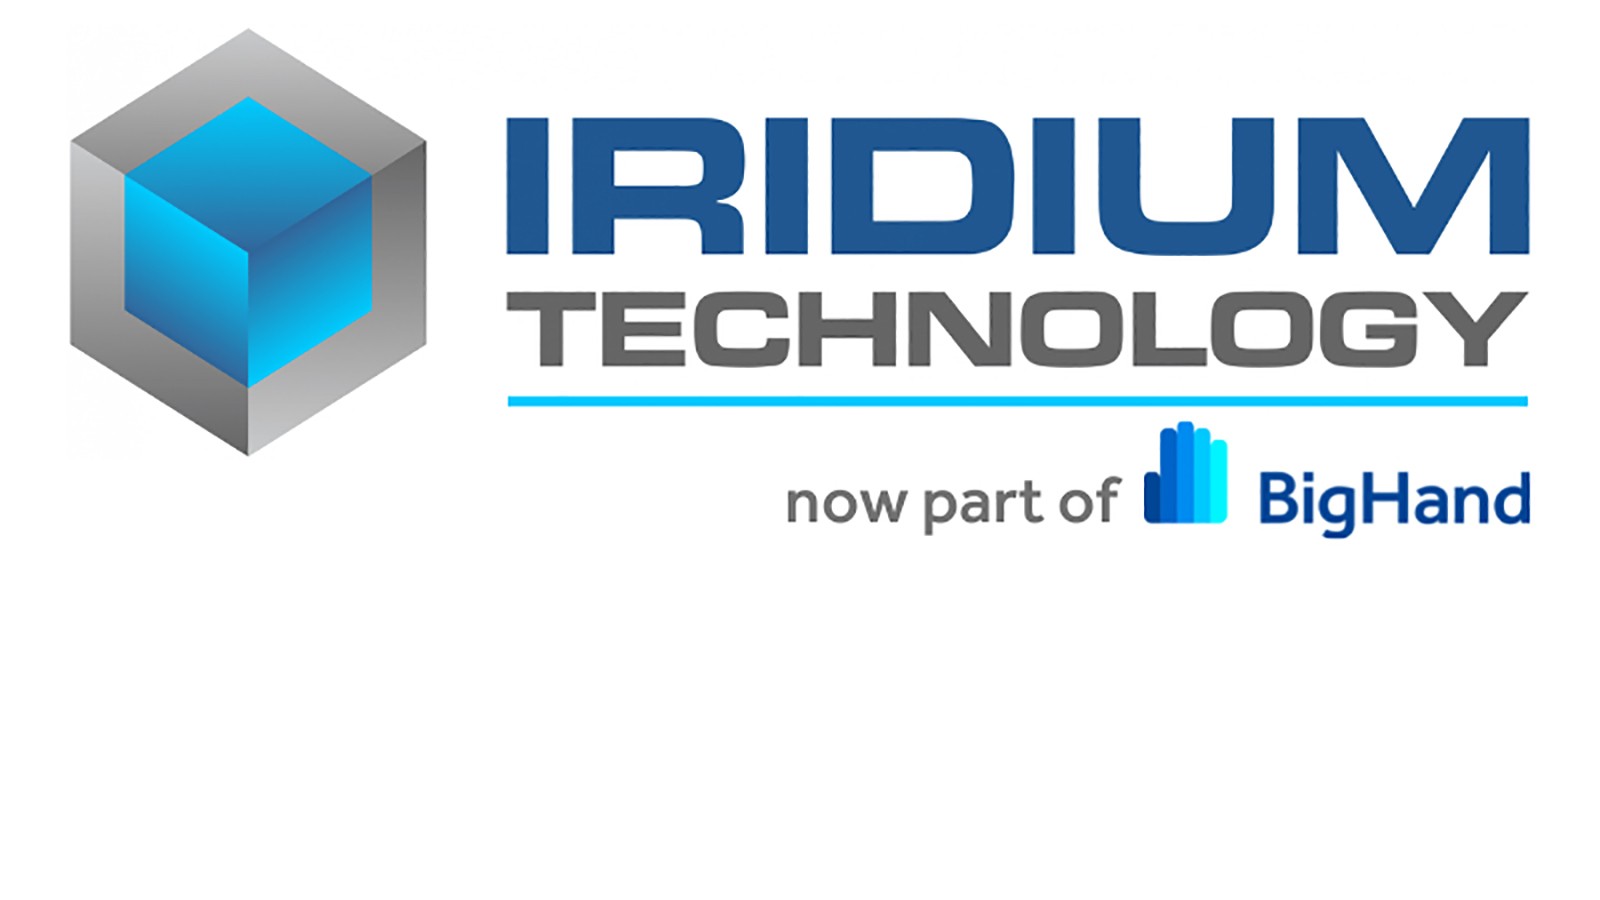 iridium technology